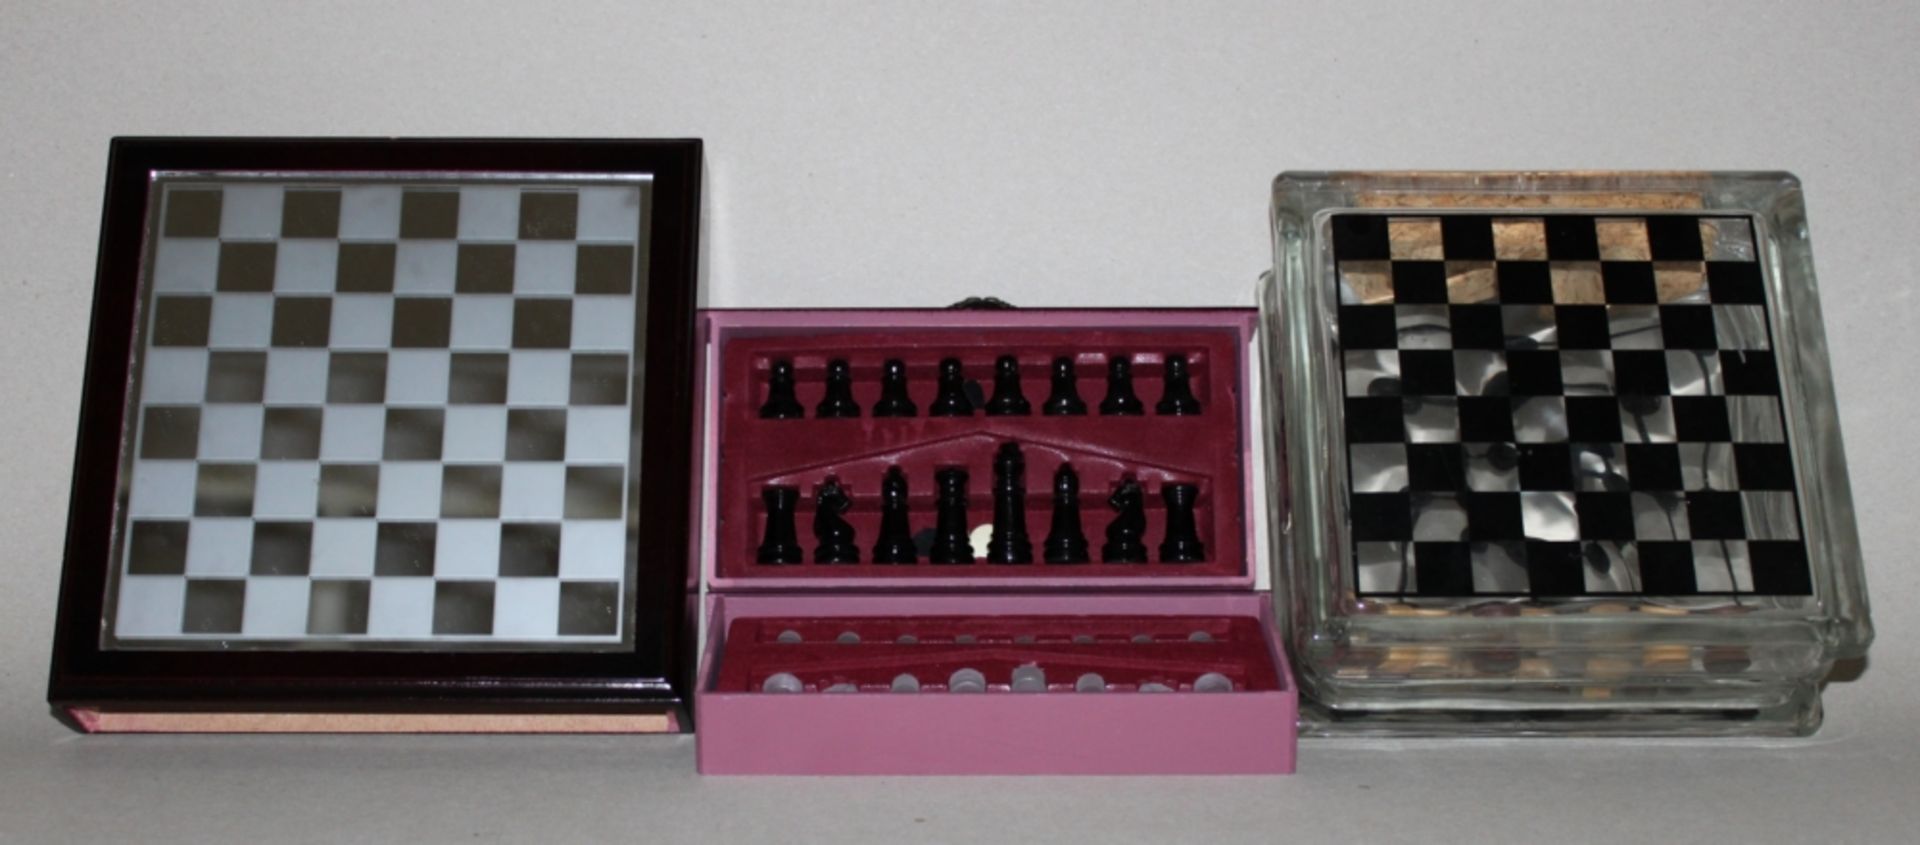 Europa. Schachspiel aus Glas in einer Zierbox mit Schachbrett. Eine Partei hell, die andere